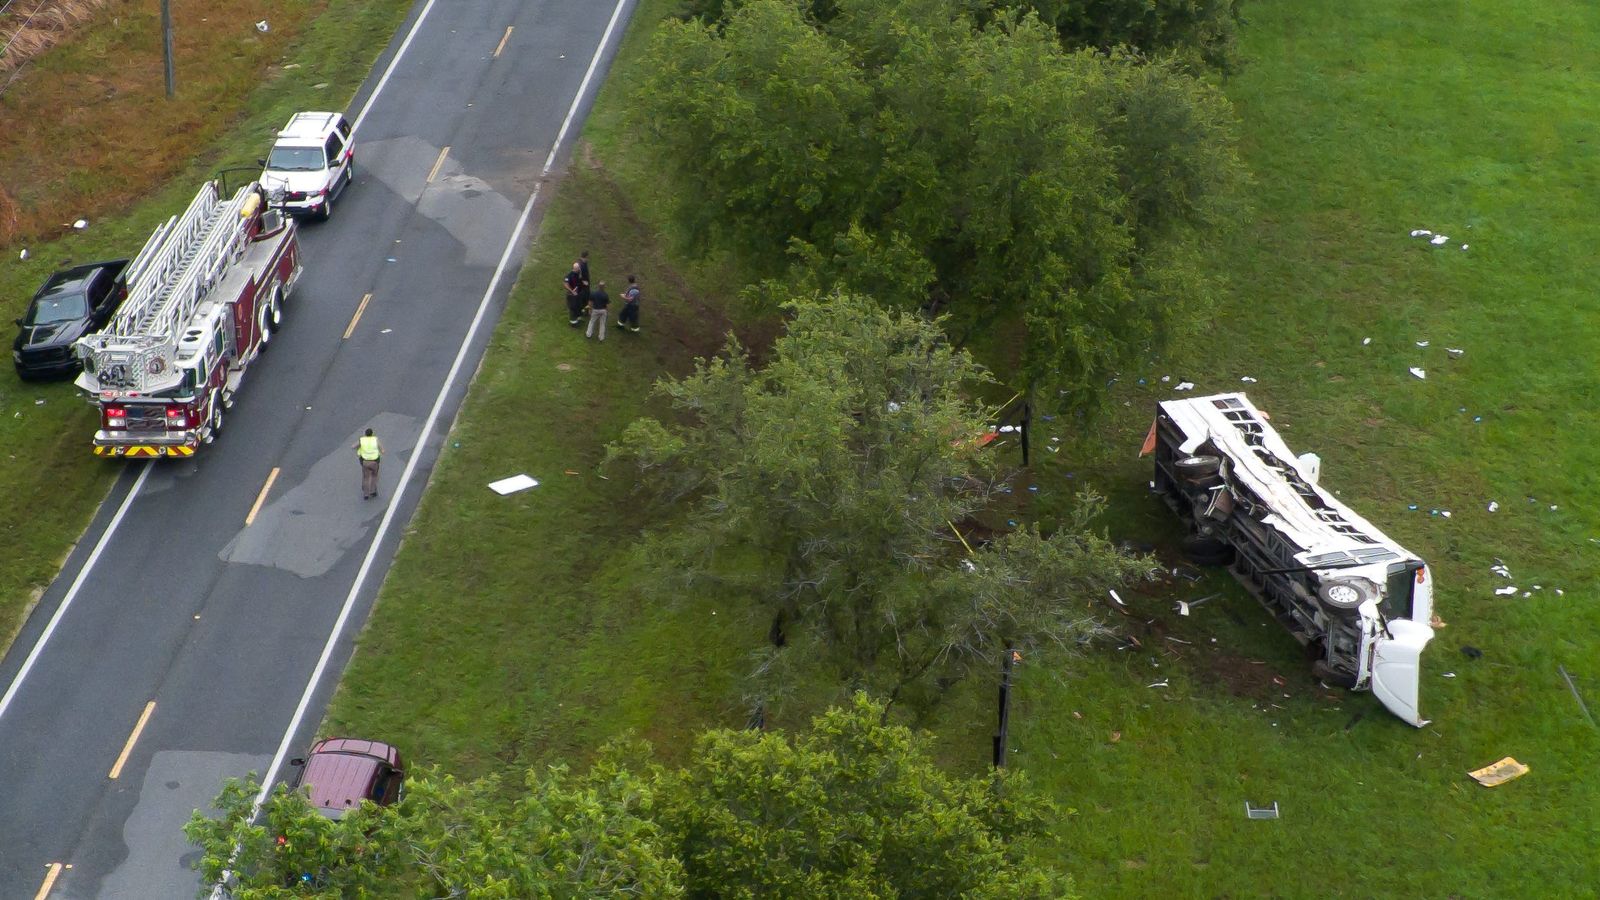 Huit morts et 40 personnes hospitalisées après un bus transportant des ouvriers agricoles impliqués dans une collision en Floride |  Actualités américaines